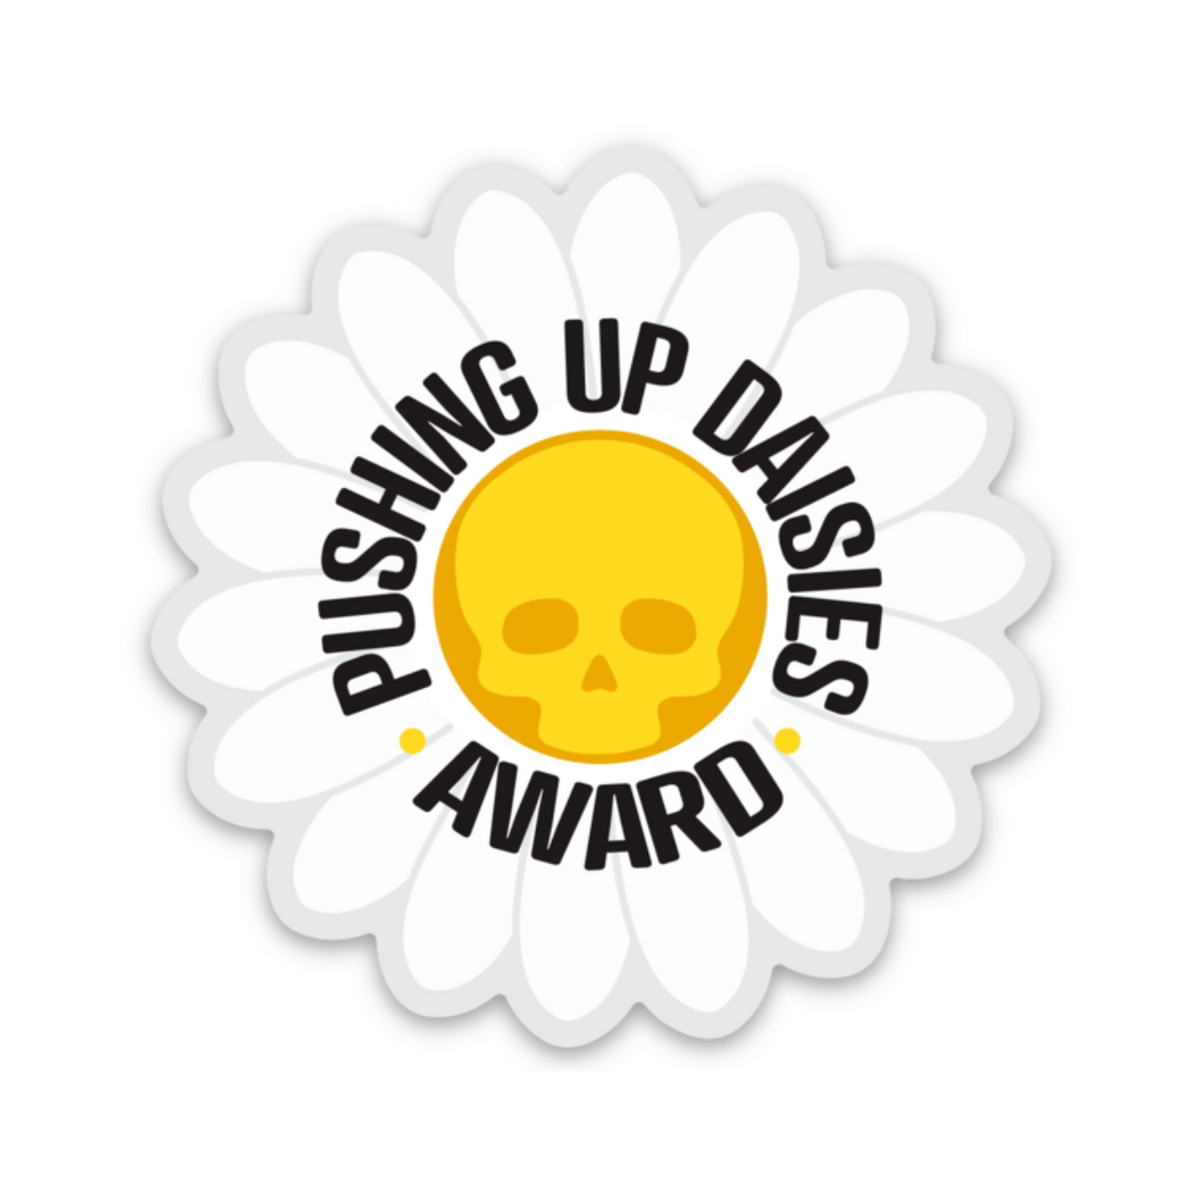 Pushing Up Daisies Award Decal